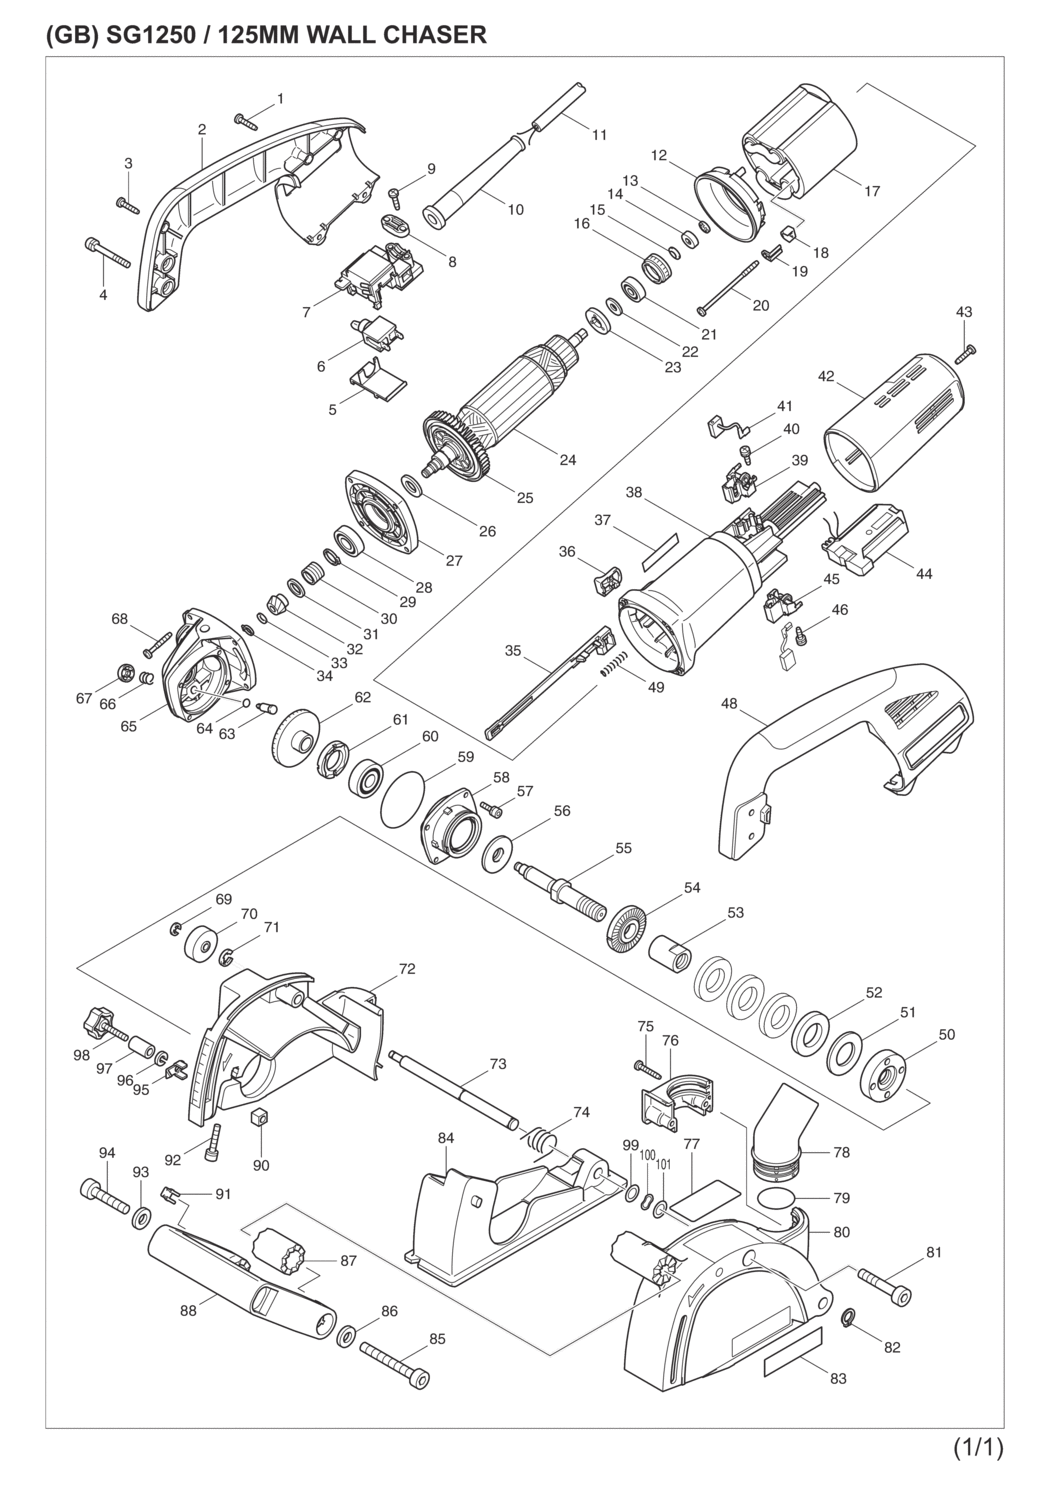 Makita SG1250 Wall Chaser Spare Parts